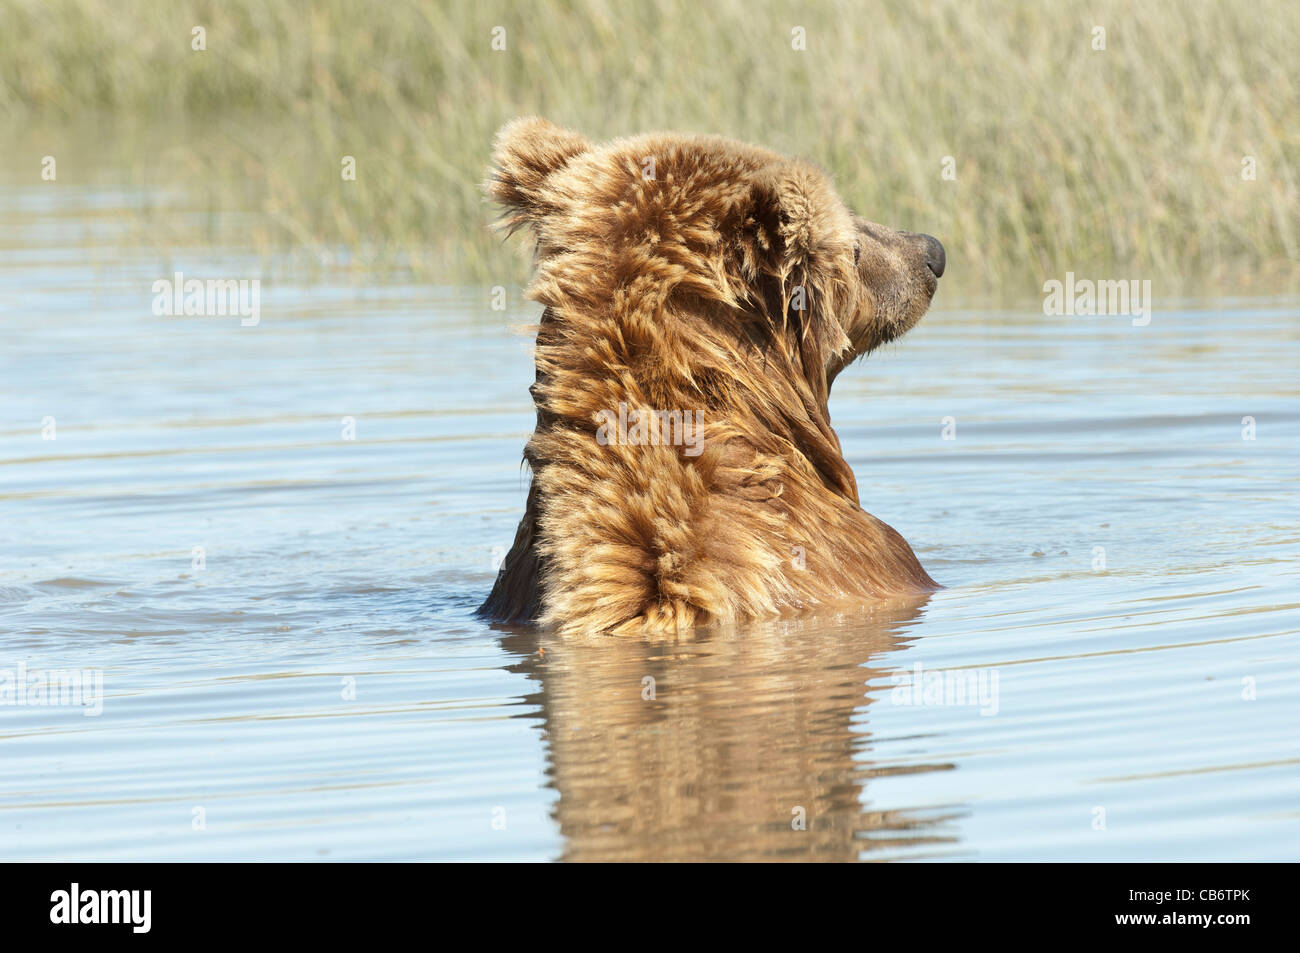 Stock Foto von einem Alaskan Braunbär in einem Bach baden. Stockfoto